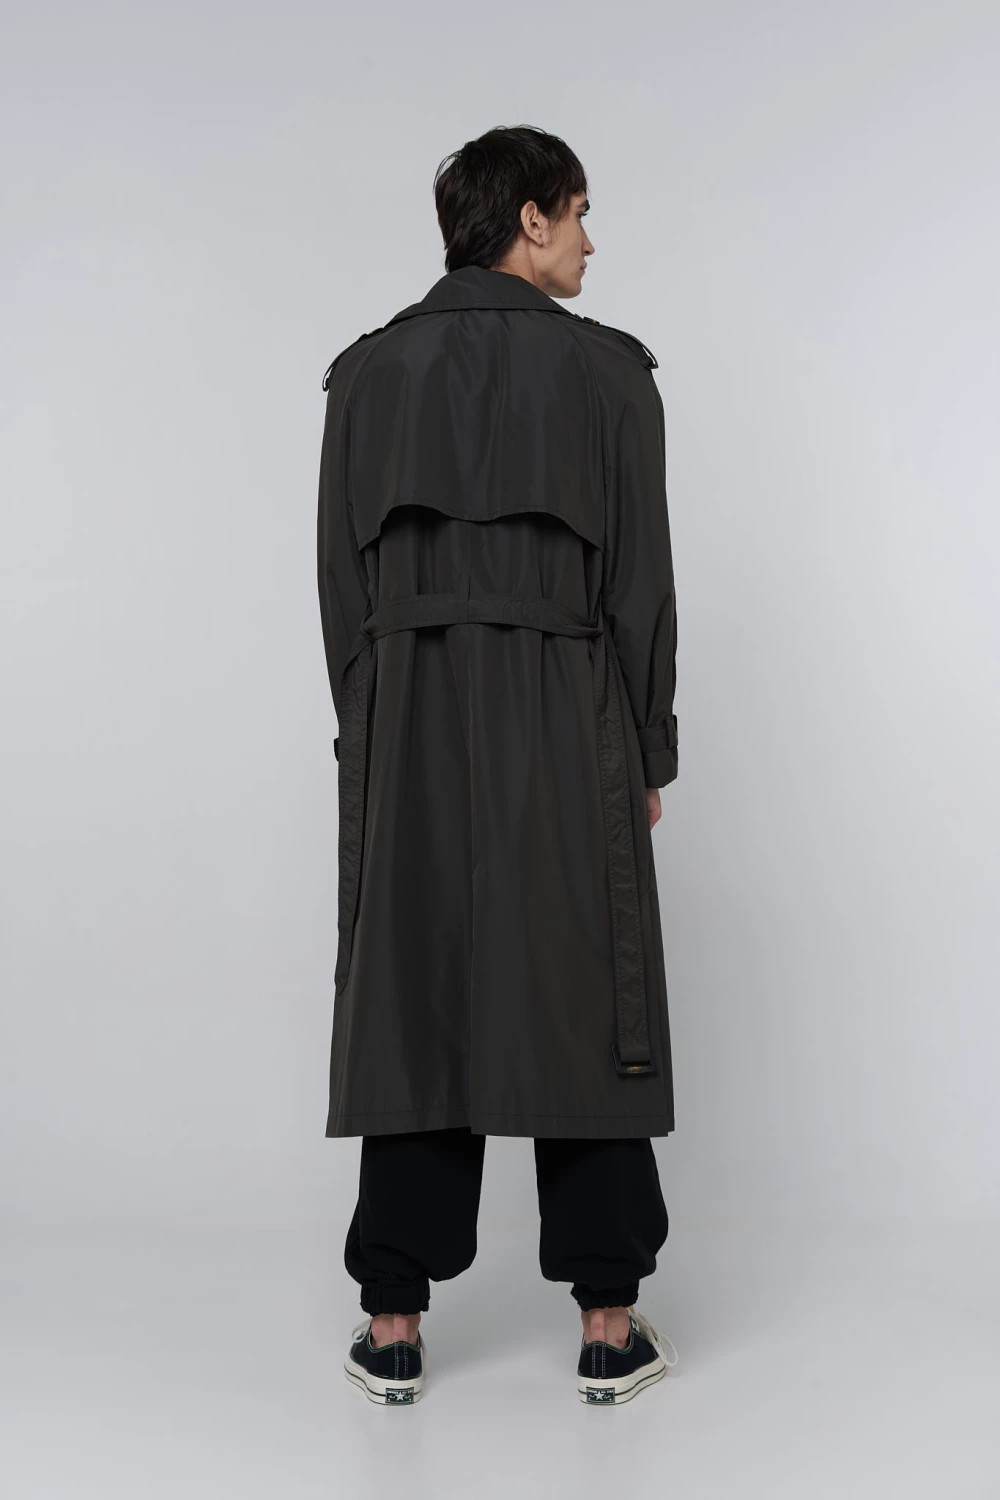 80s trench coat in dark gray color